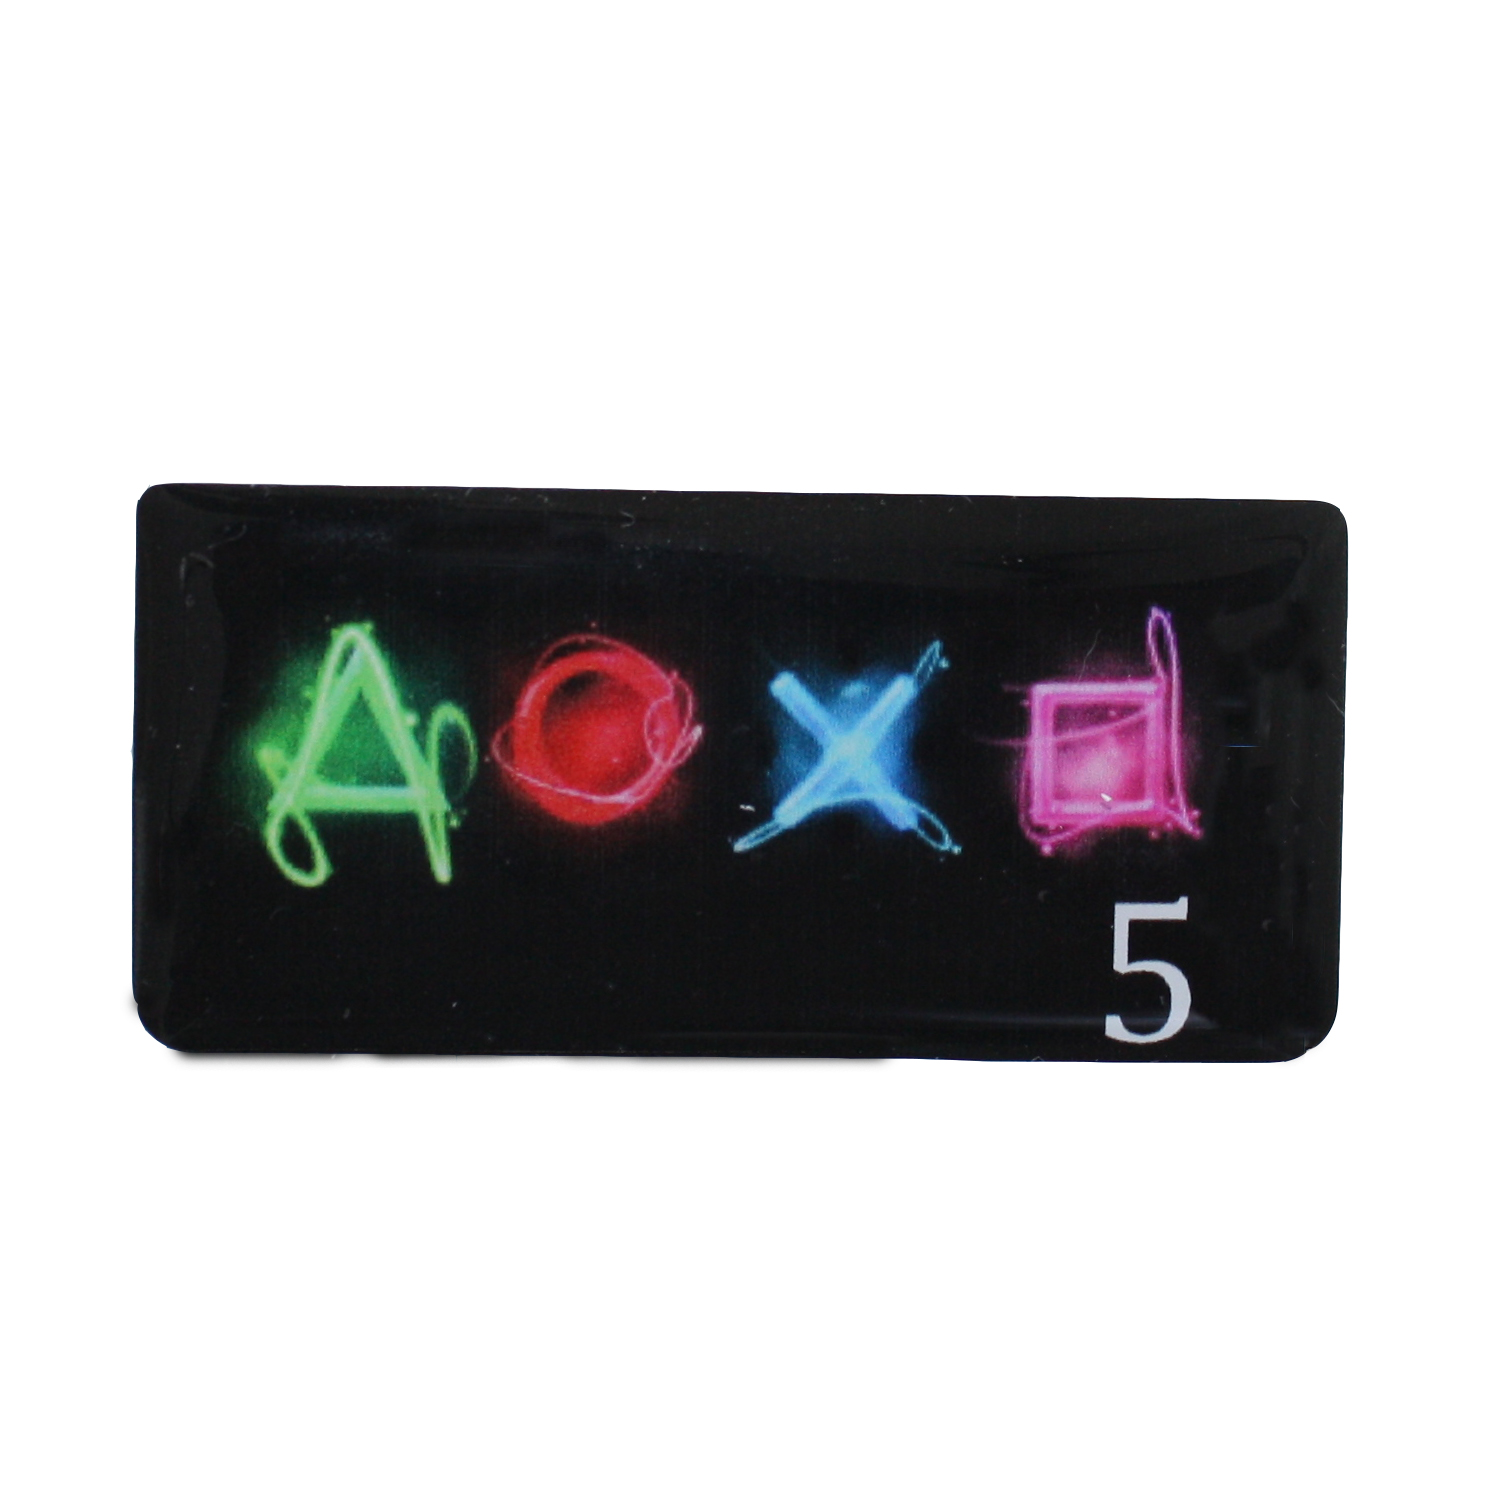 برچسب تاچ پد دسته بازی PS4 مدل AOXO5